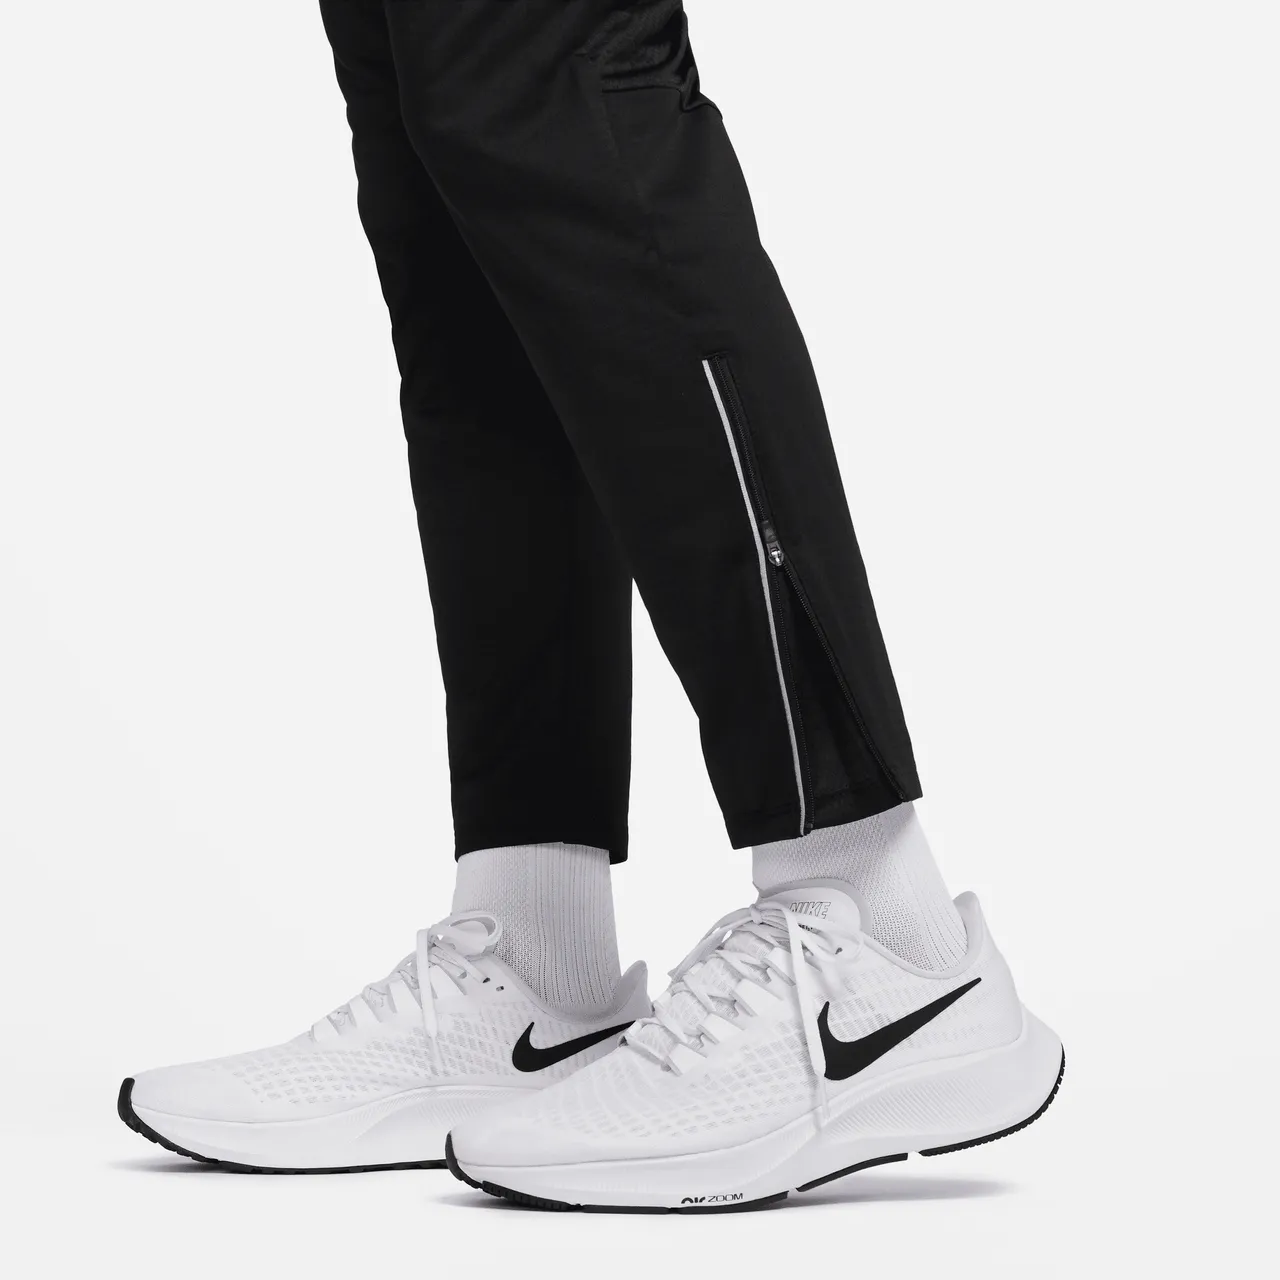 Nike Phenom Dri-FIT knit hardloopbroek voor heren - Zwart